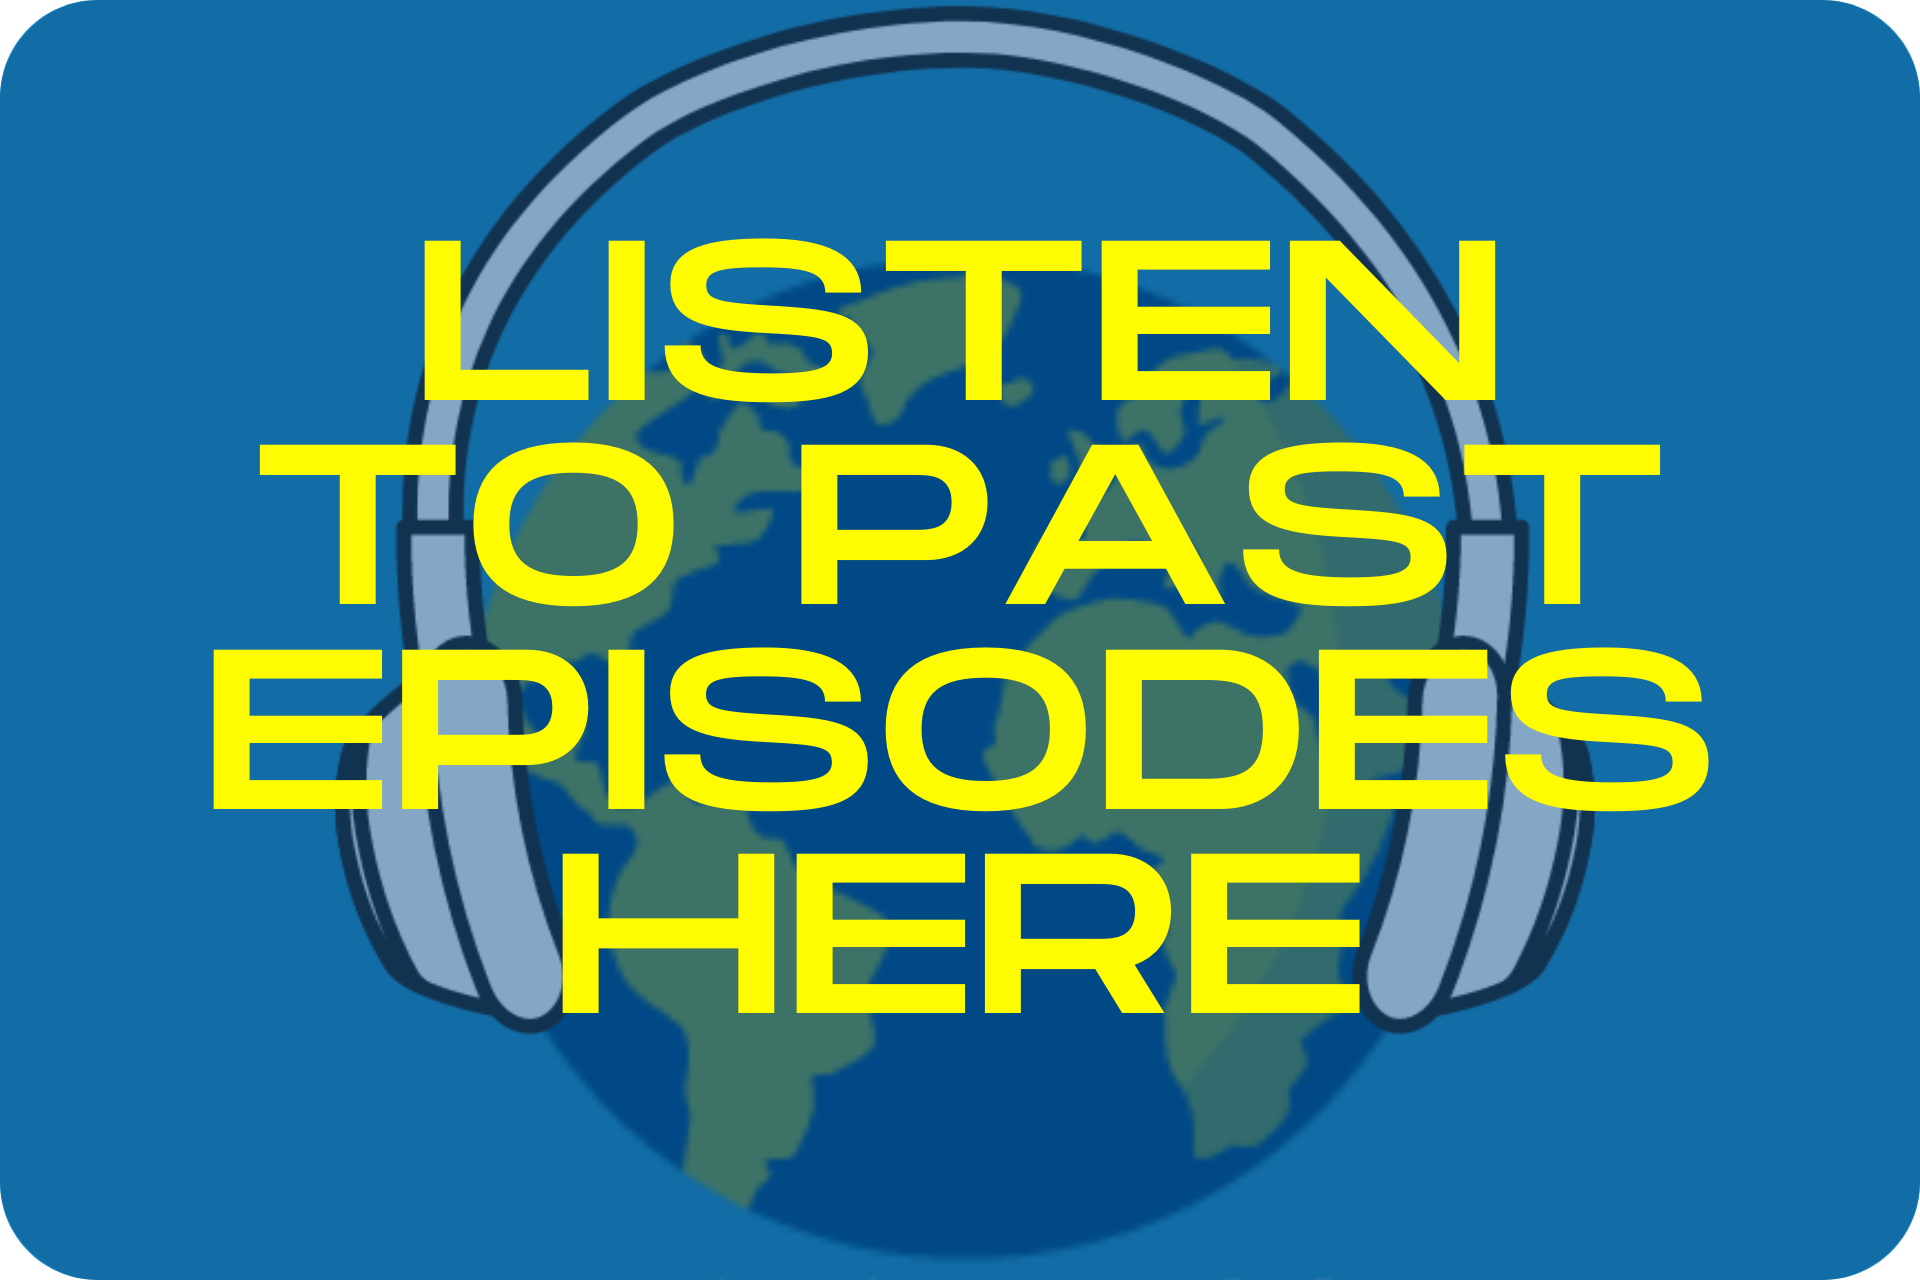 Listen to Past Episodes